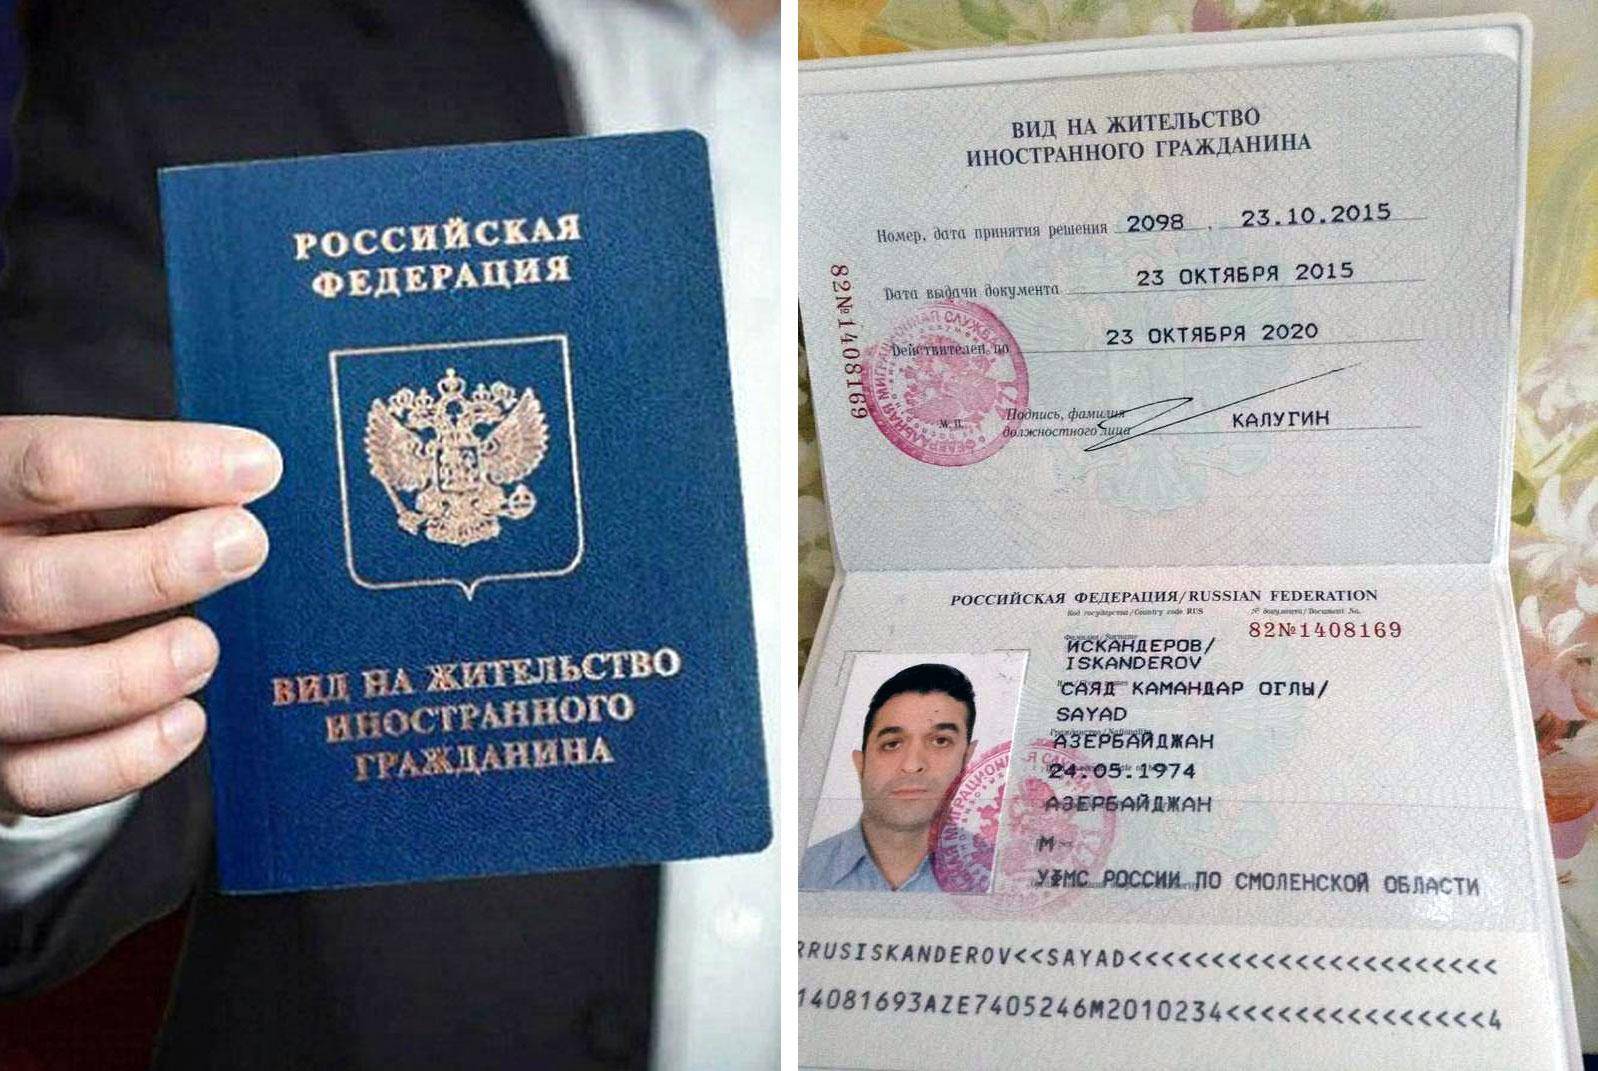 Эмиграция из россии в никарагуа: пмж и гражданство | internationalwealth.info